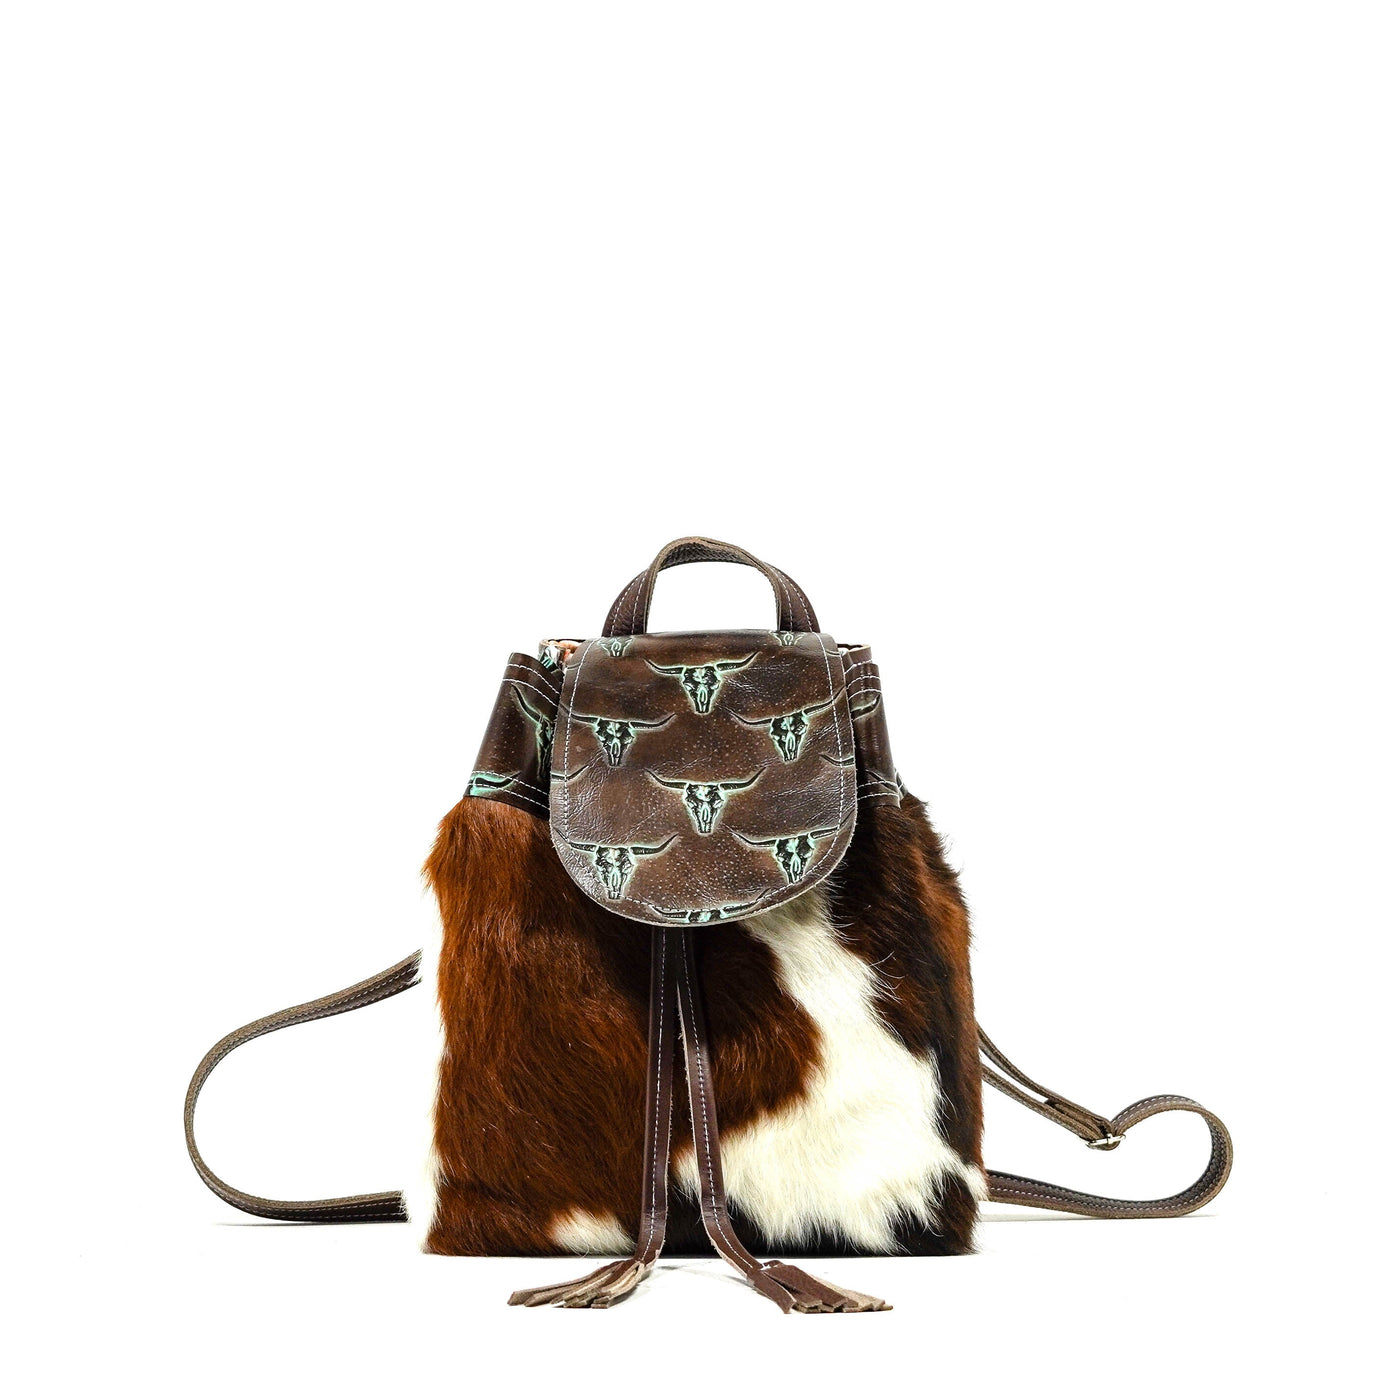 Mini Kelsea Backpack - Tricolor w/ Mint Chocolate Skulls-Mini Kelsea Backpack-Western-Cowhide-Bags-Handmade-Products-Gifts-Dancing Cactus Designs